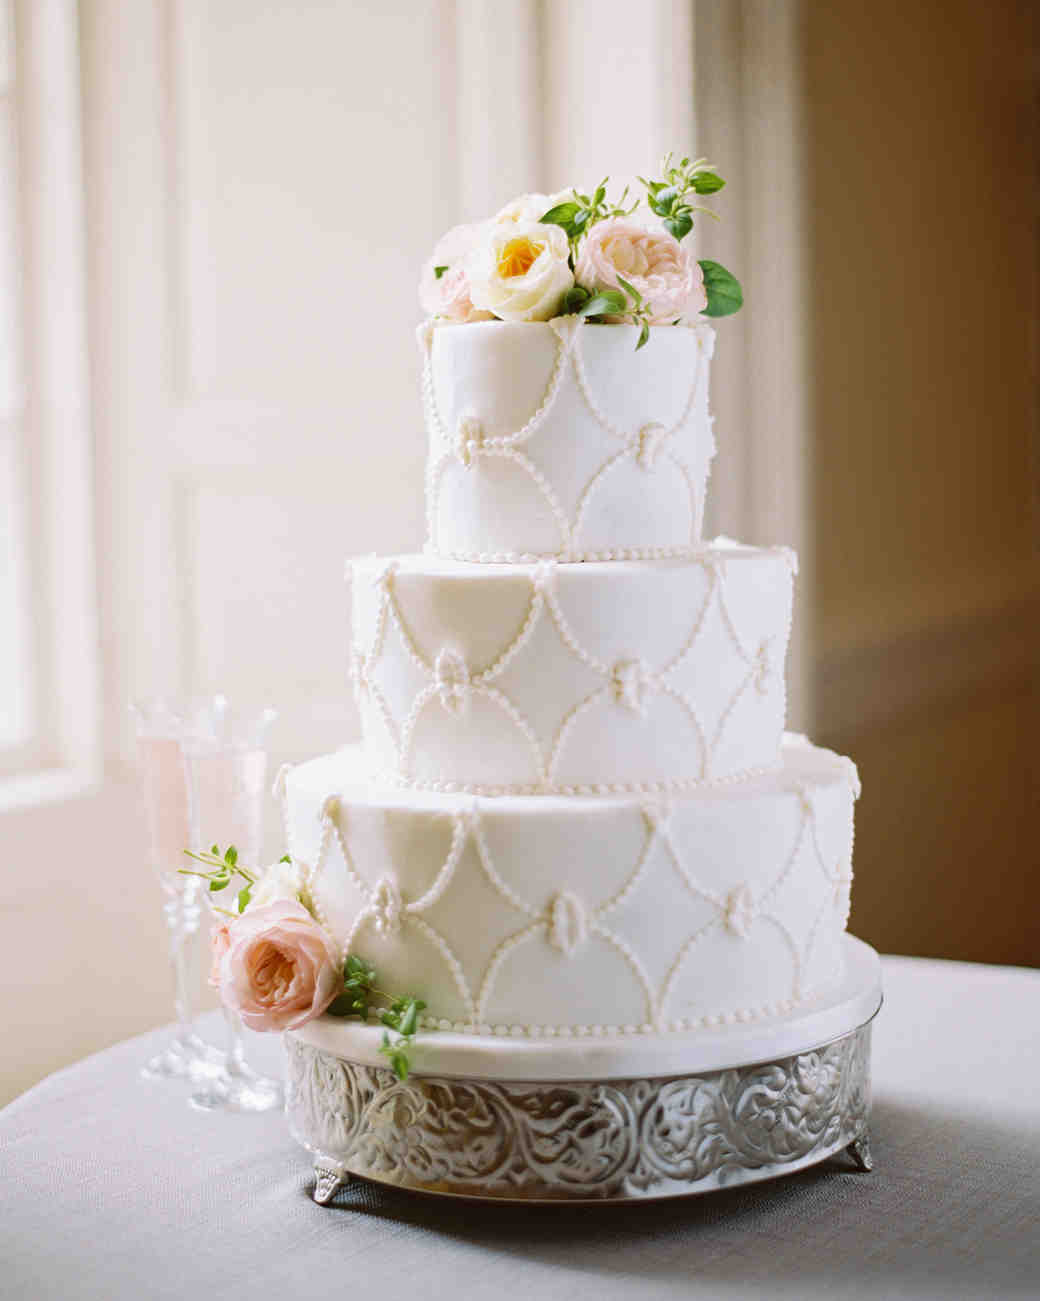 irby-adam-wedding-cake-24-s111660-1014_vert